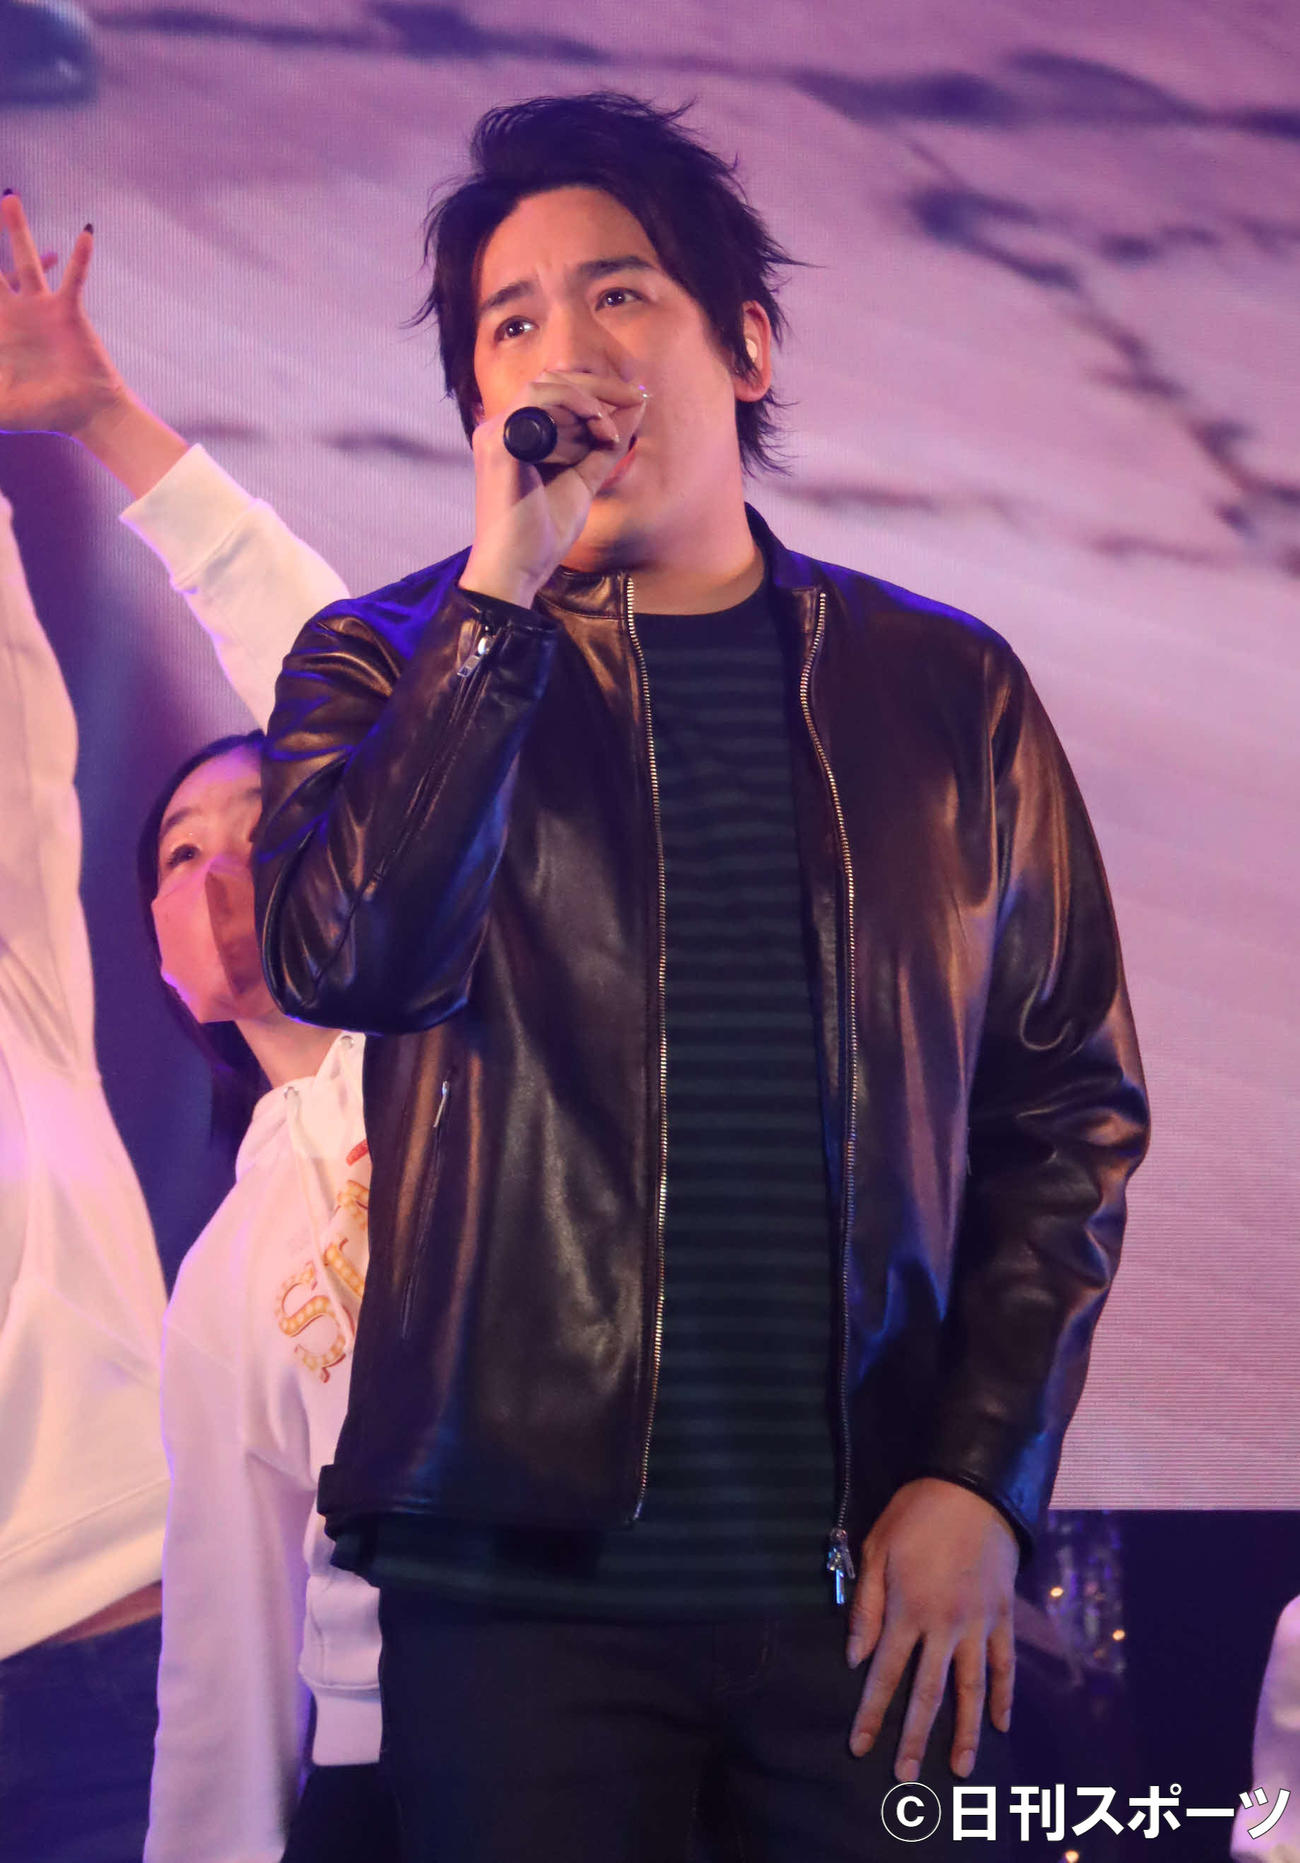 映画「SING／シング:ネクストステージ」のイベントで歌唱するスキマスイッチの大橋卓弥